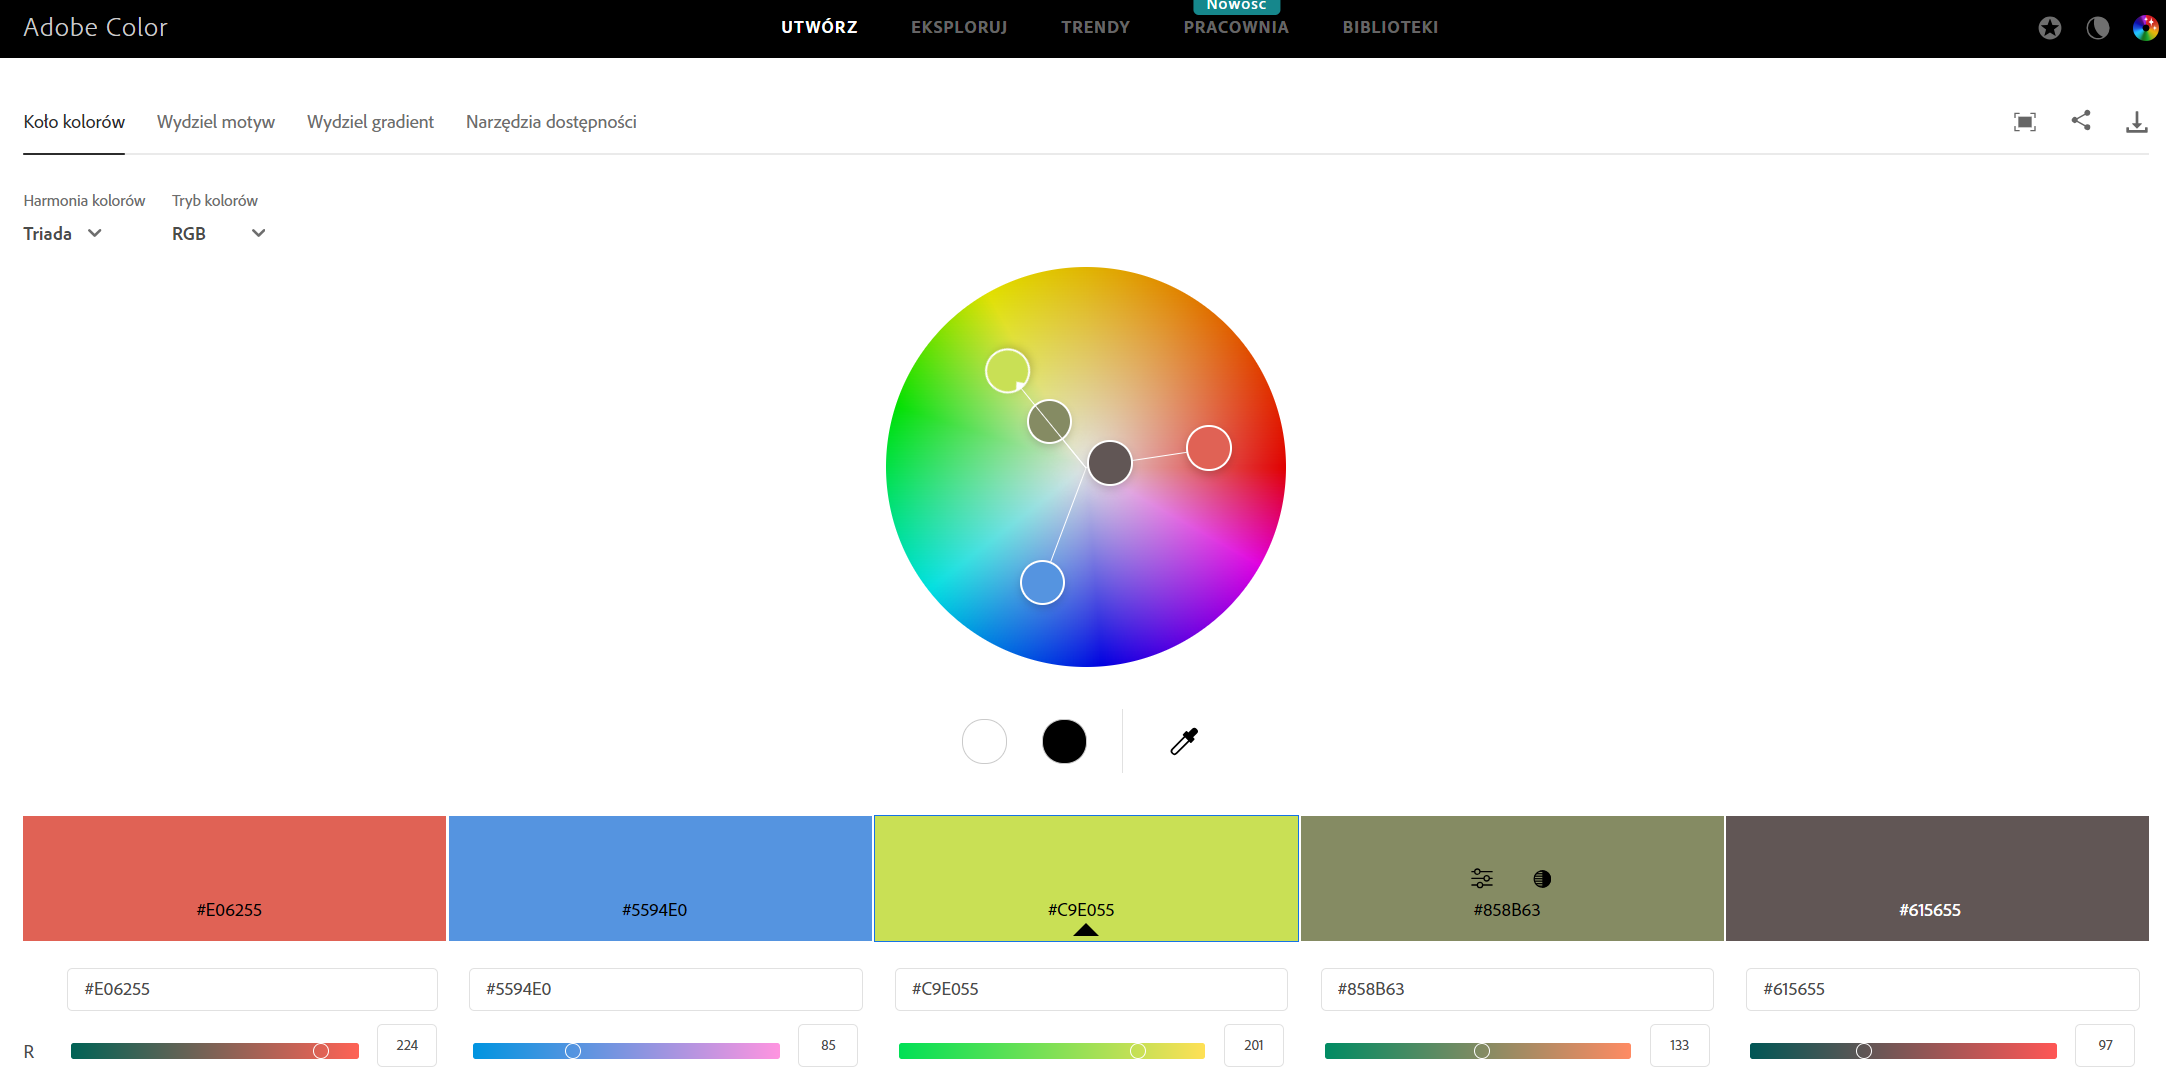 Wpis na temat psychologii kolorów - koło kolorów, widok w Adobe